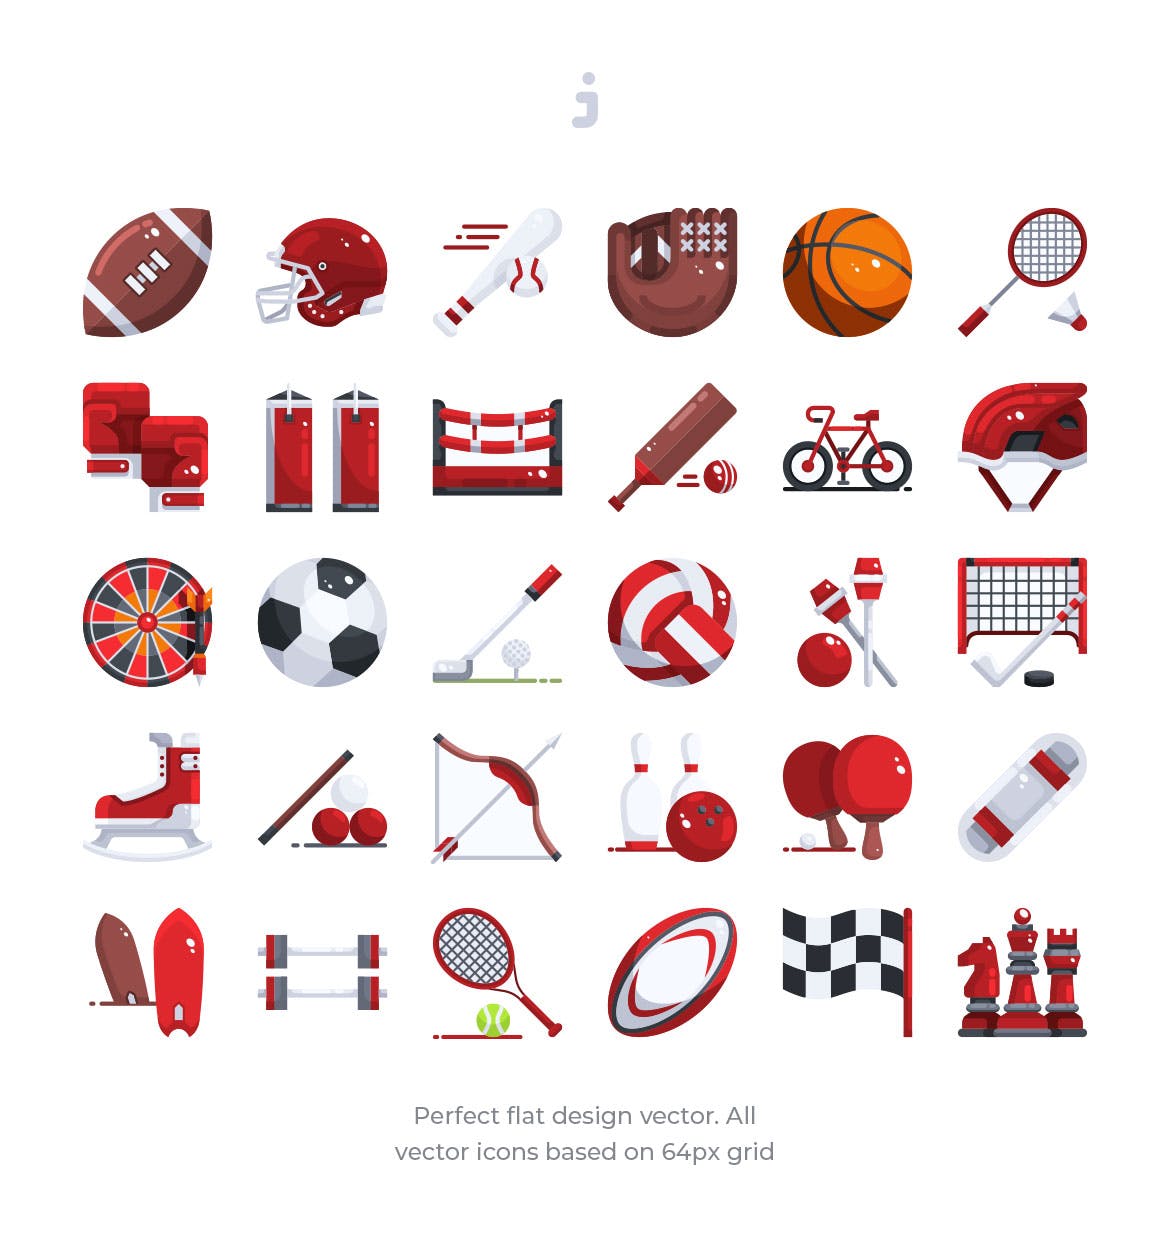 体育运动器械彩色矢量图标素材 30 Sport Elemen